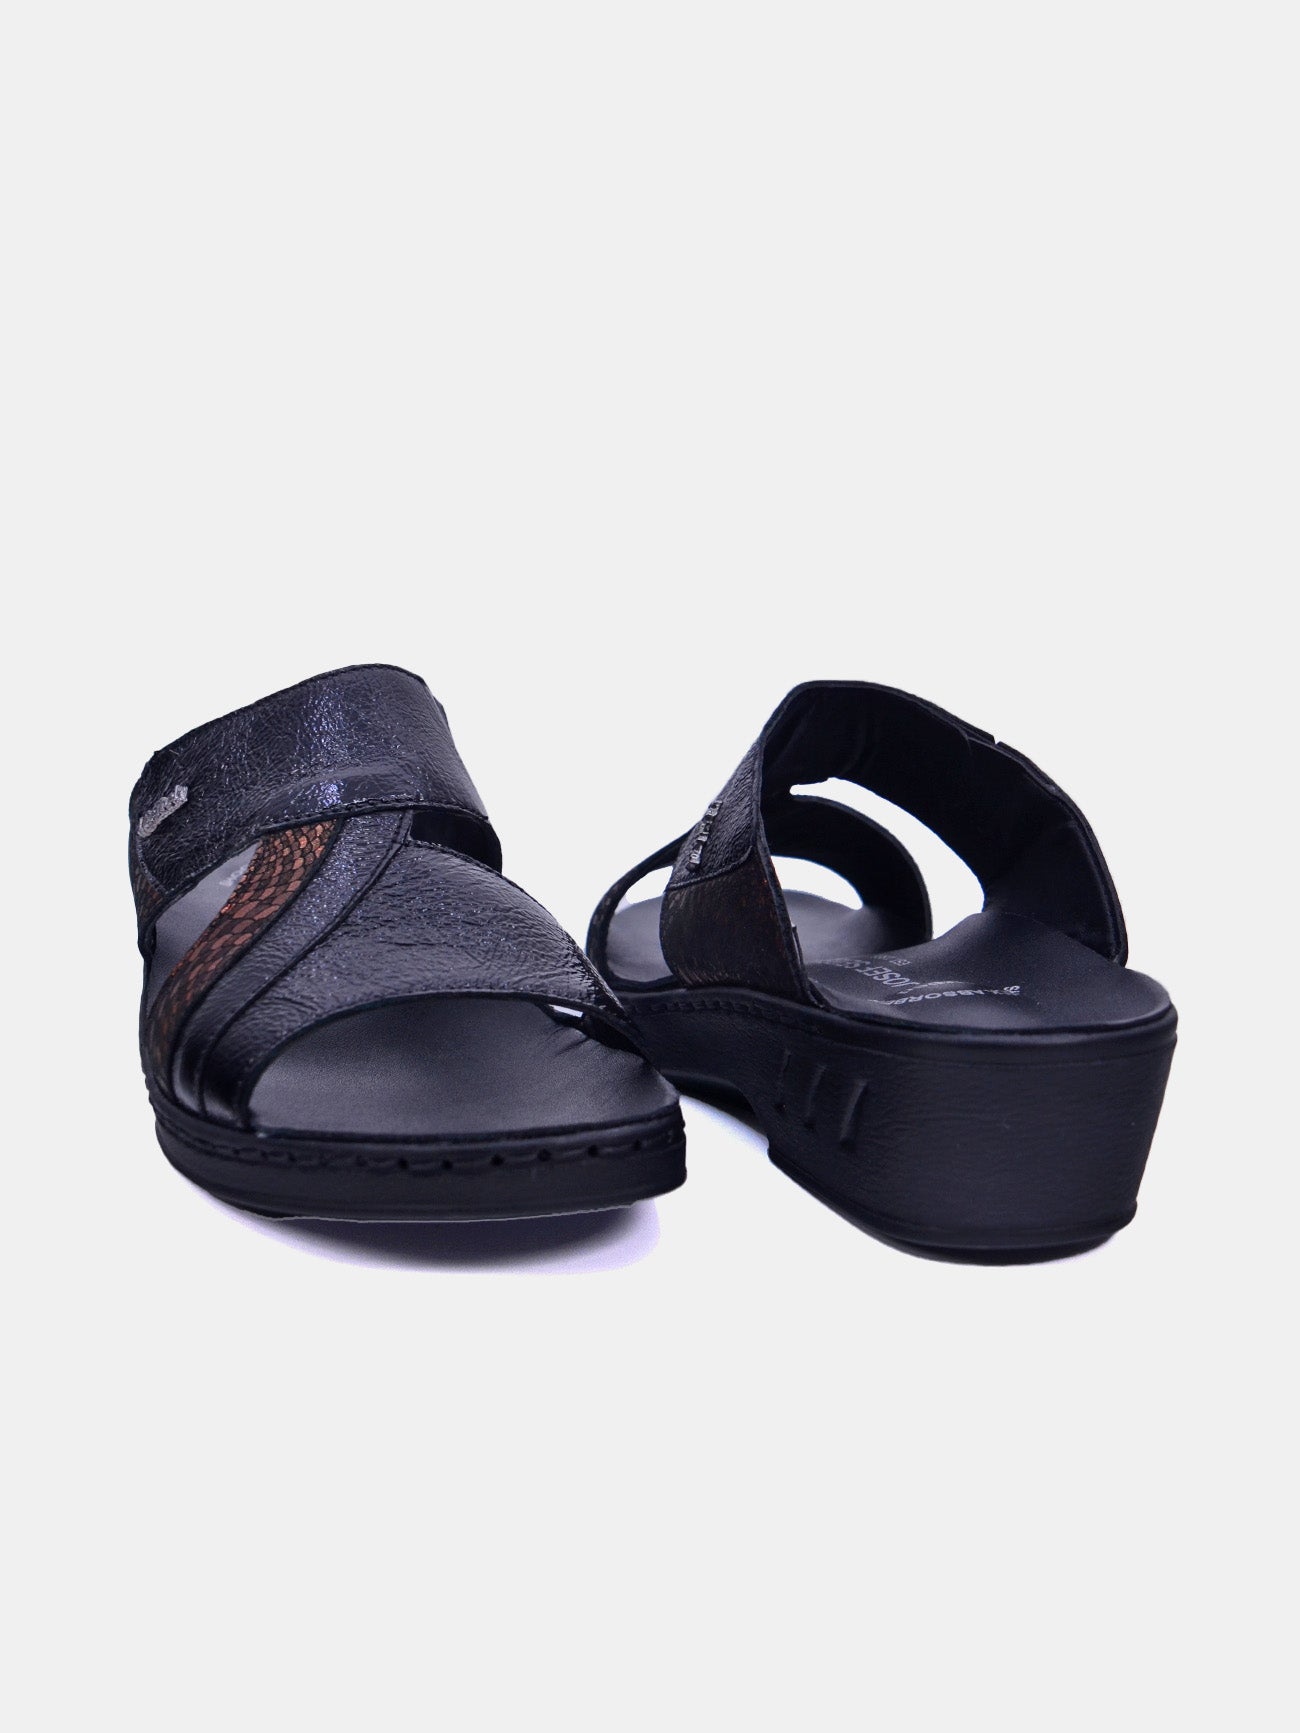 Josef Seibel 08824 Women's Sandals #color_Brown